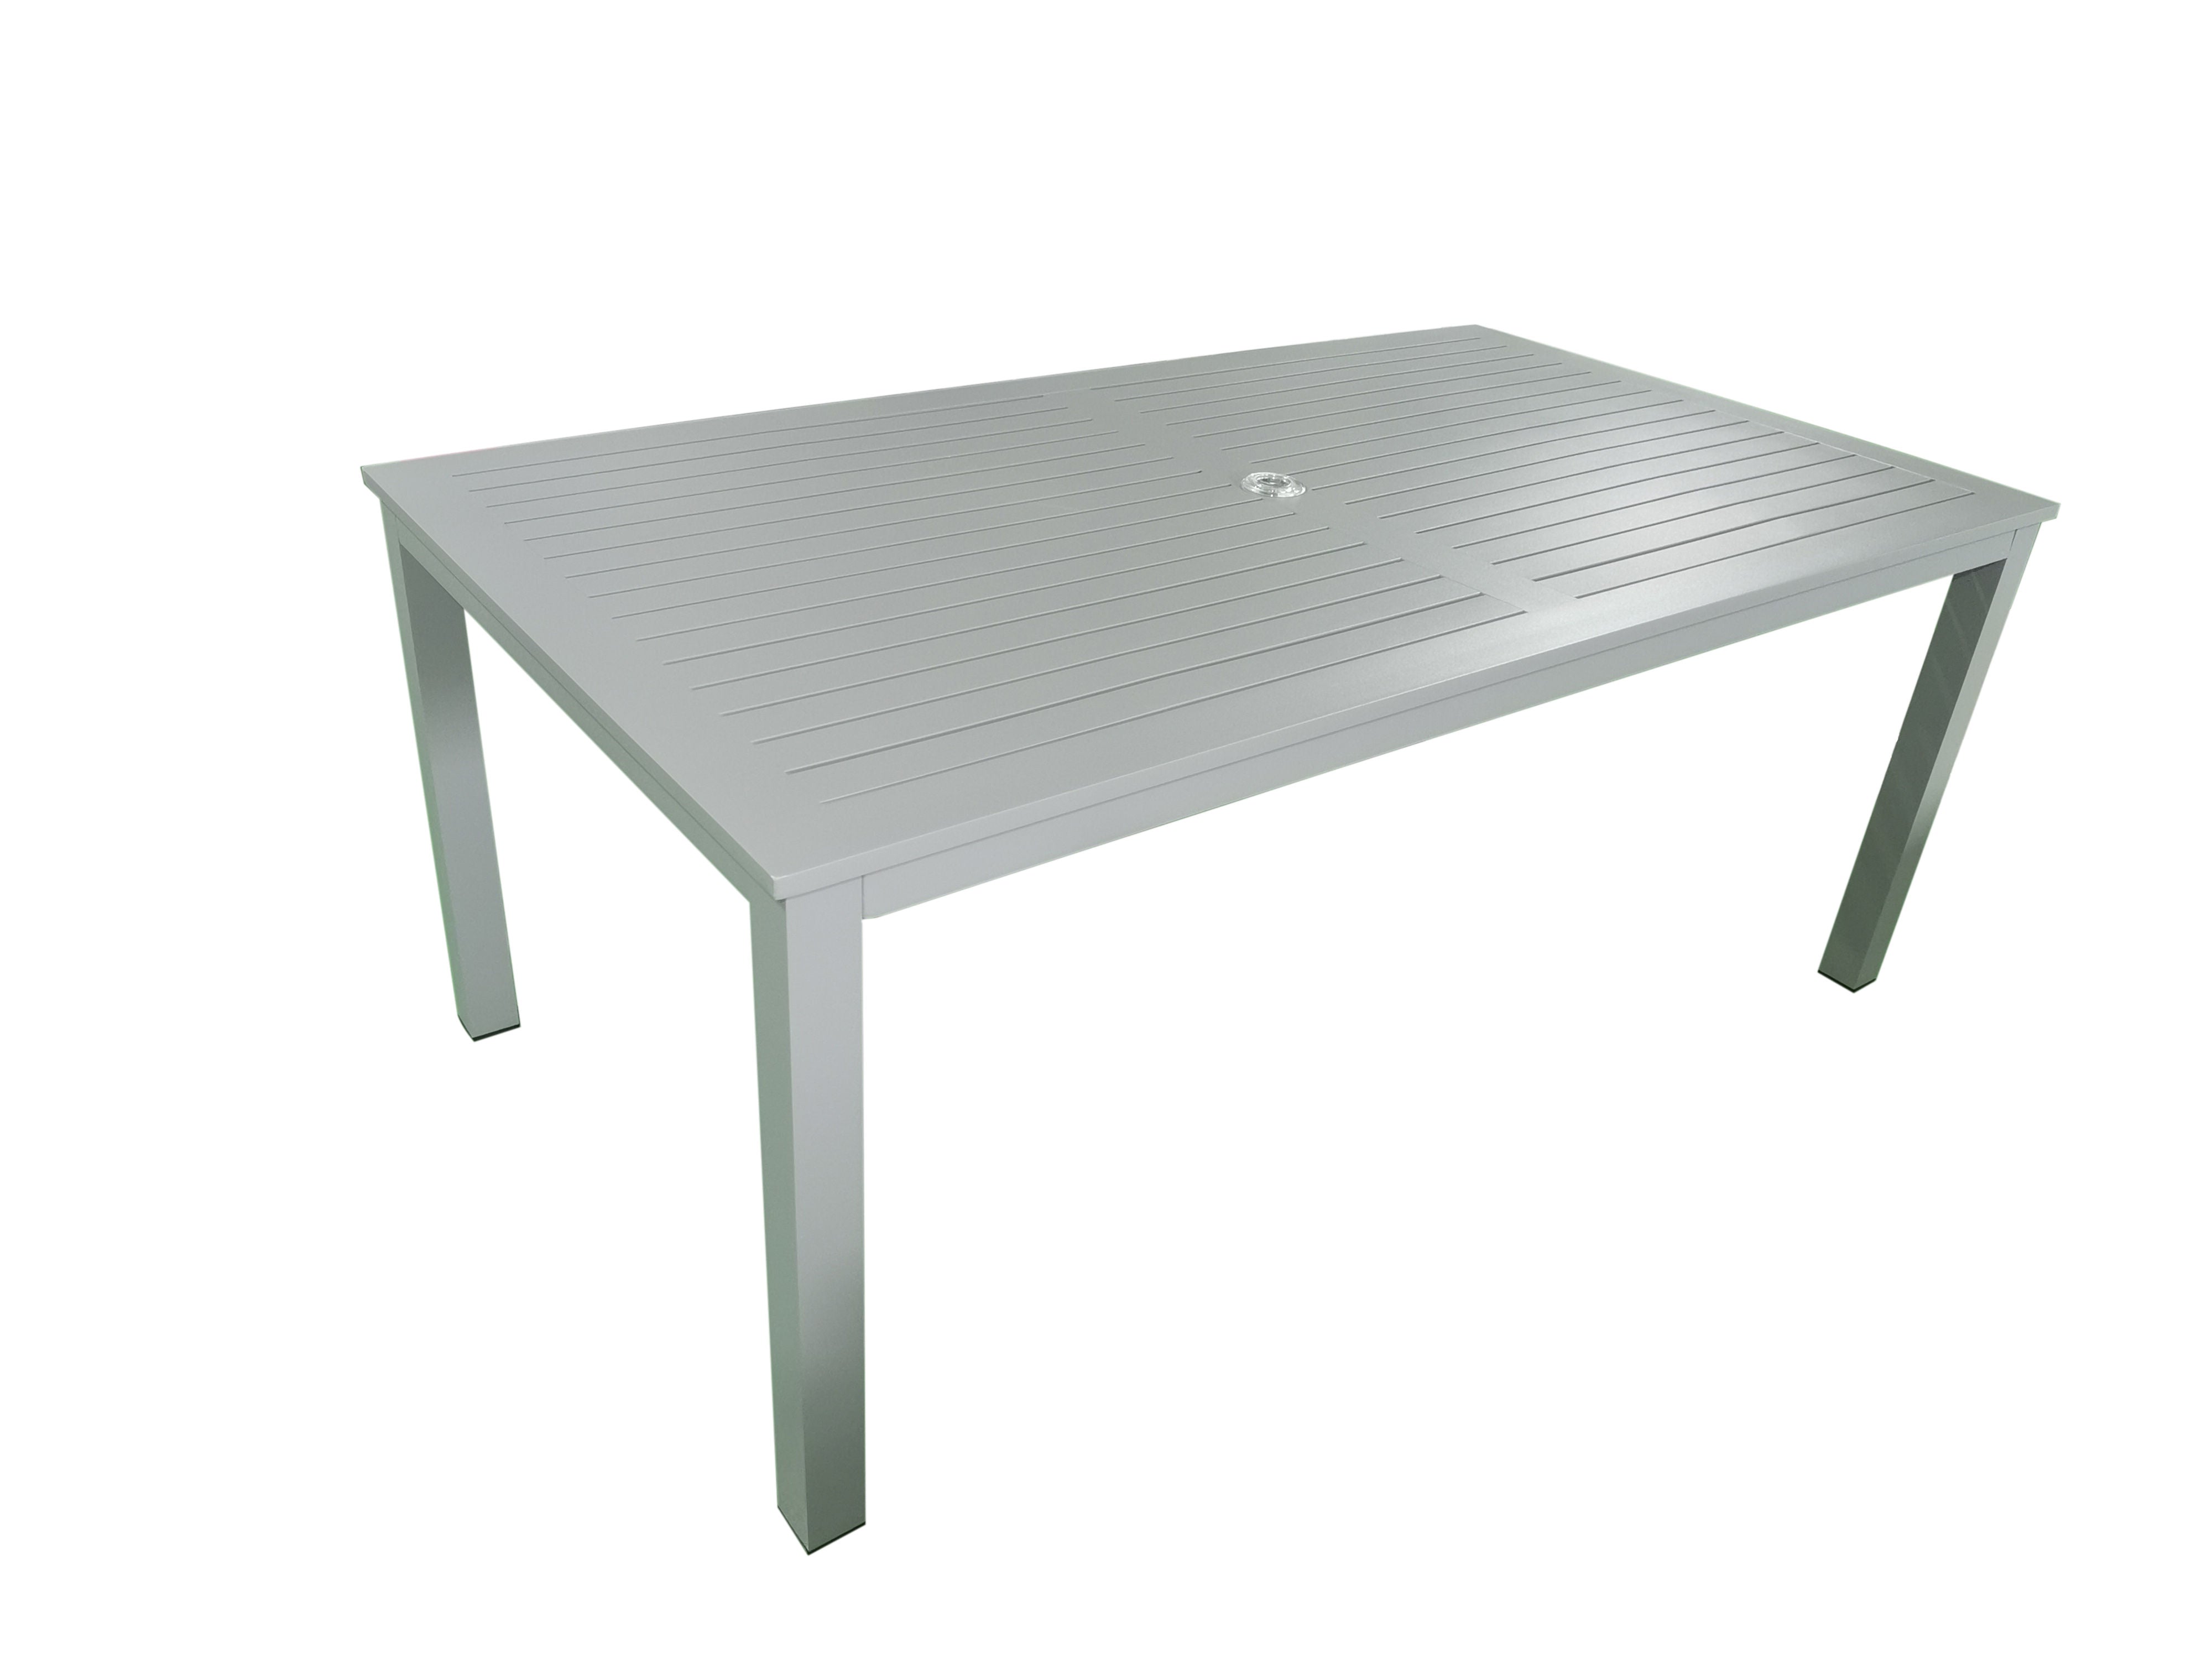 MOSS MOSS-T304GP - Akumal Collection,  Rectangular table aluminum light grey with light grey aluminum slats and umbrella hole 60" x 38" x H 29,1"